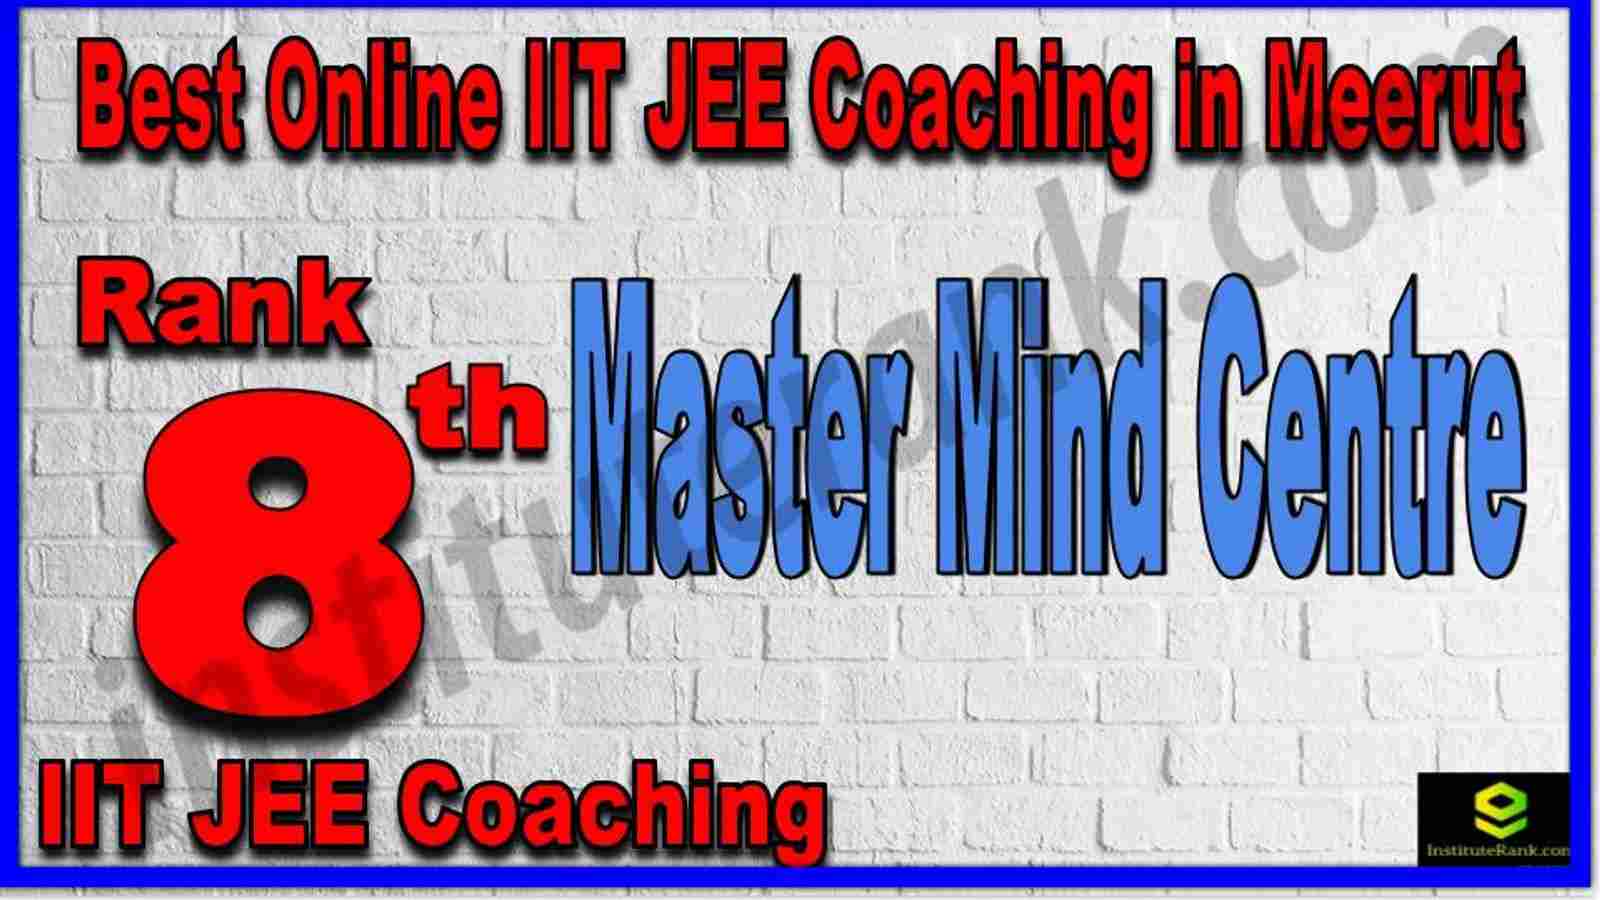 Rank 8th Best Online IIT JEE Coaching in Meerut